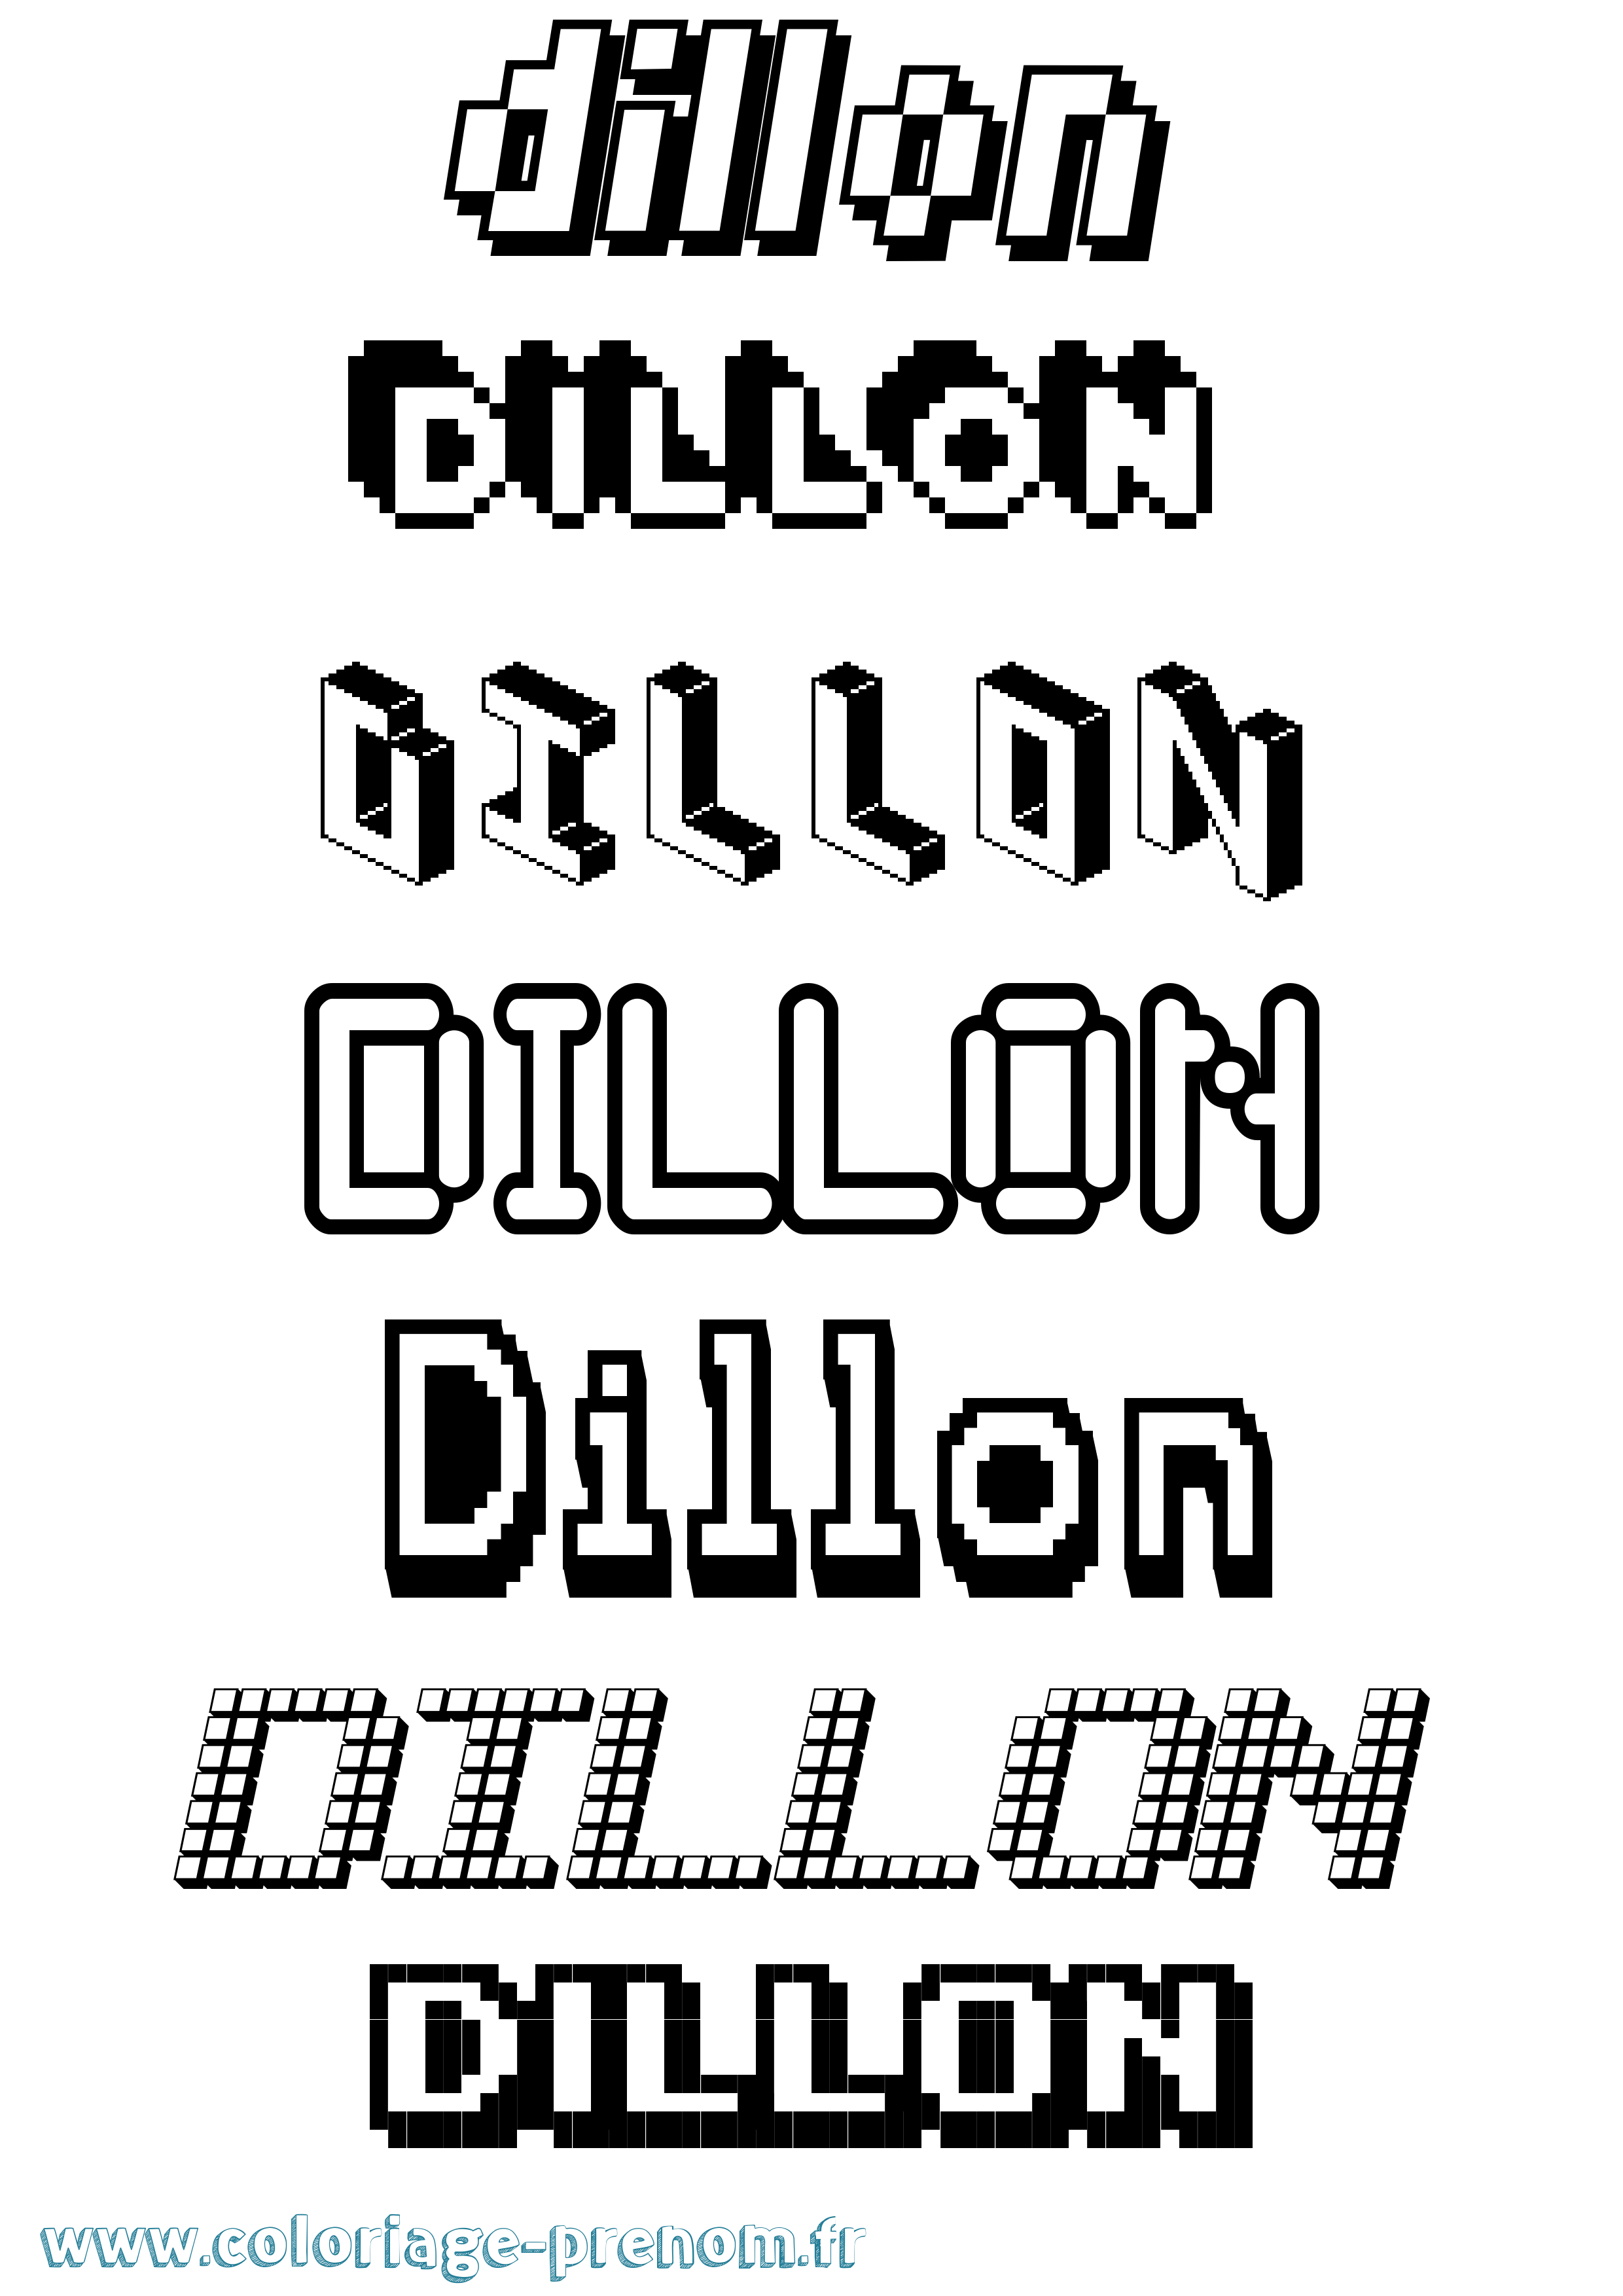 Coloriage prénom Dillon Pixel